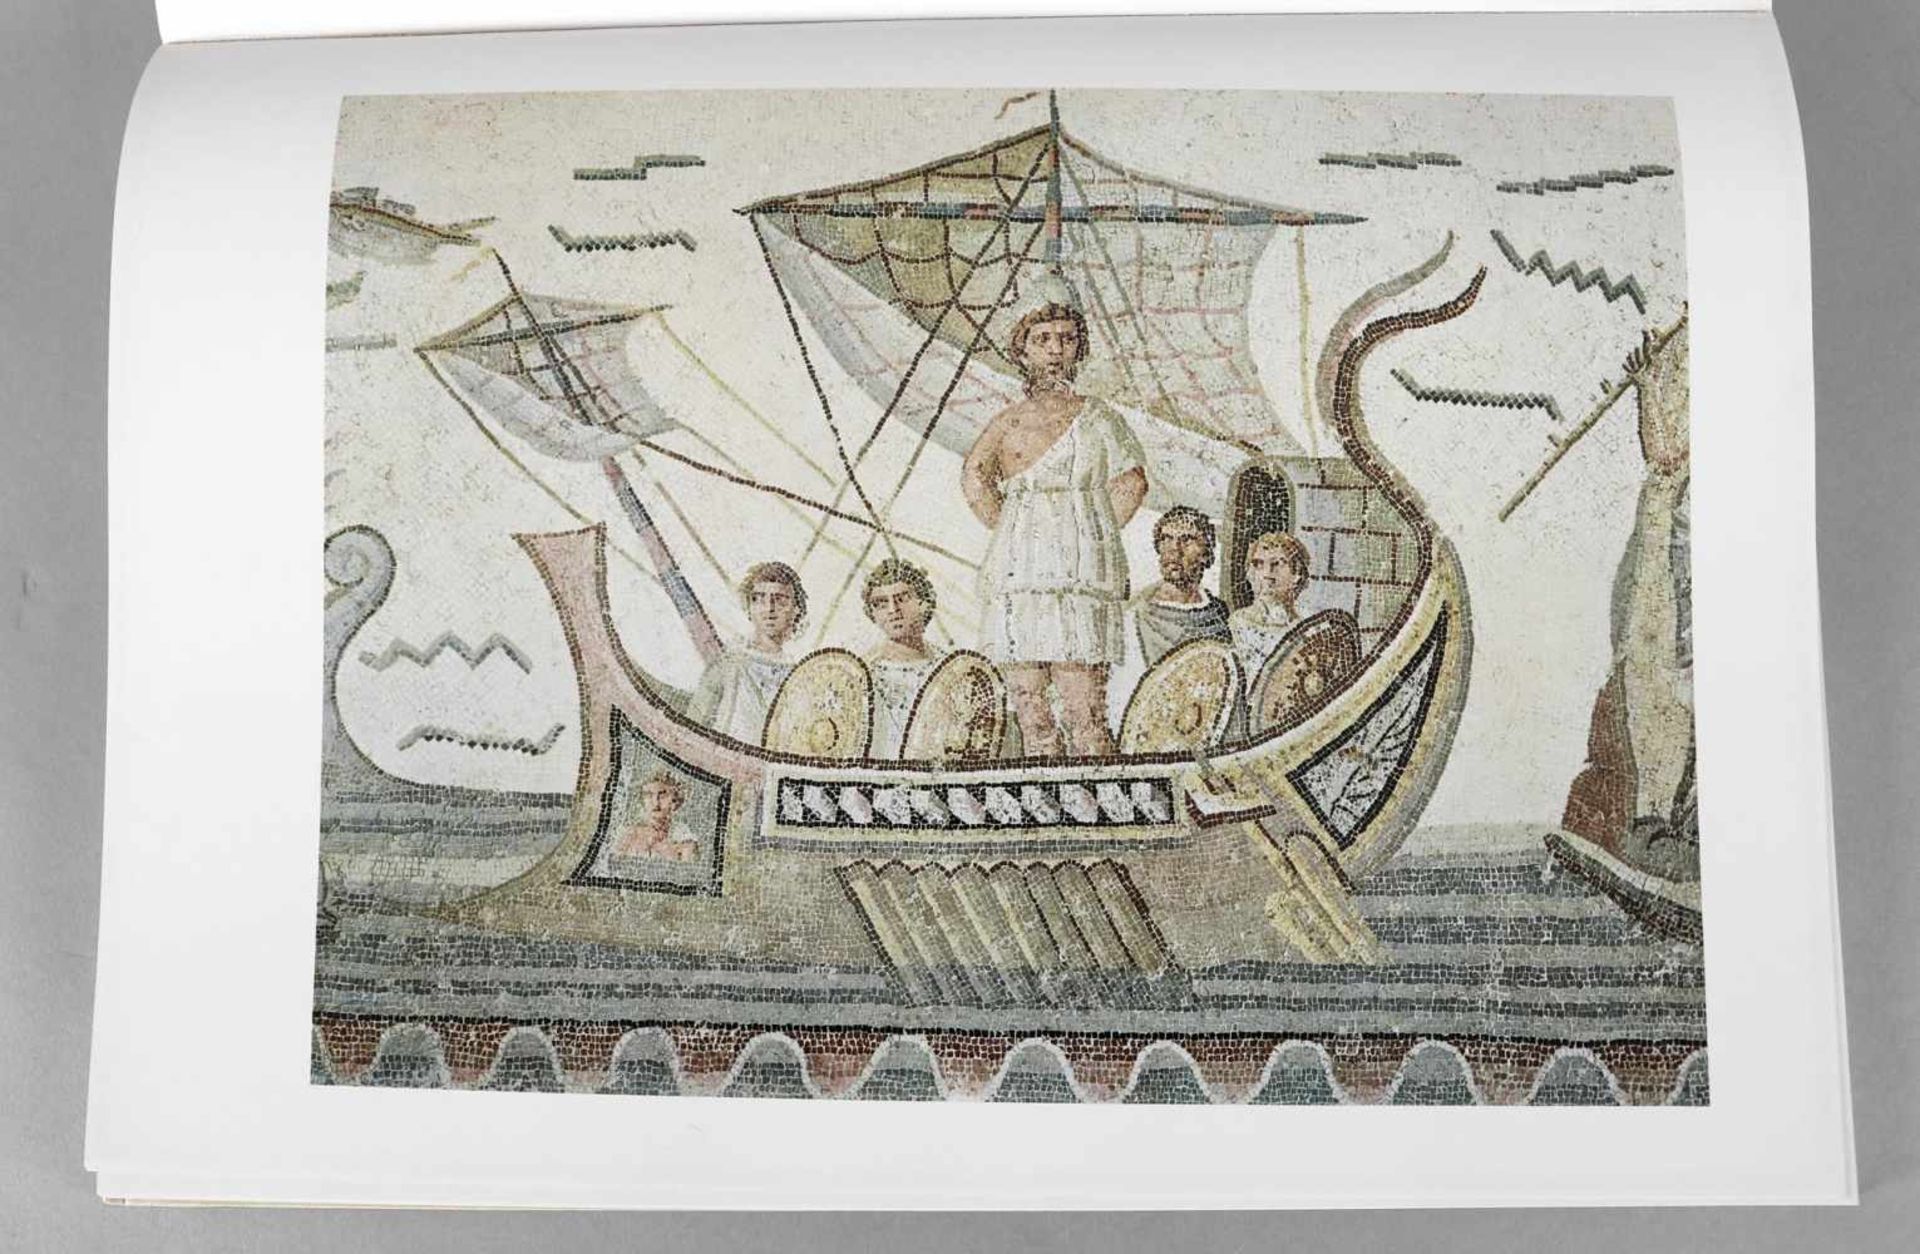 Tunis, Alte Mosaiken, UNESCO-Sammlung der Weltkunst, New York Graphic Society 1962 - Bild 2 aus 2